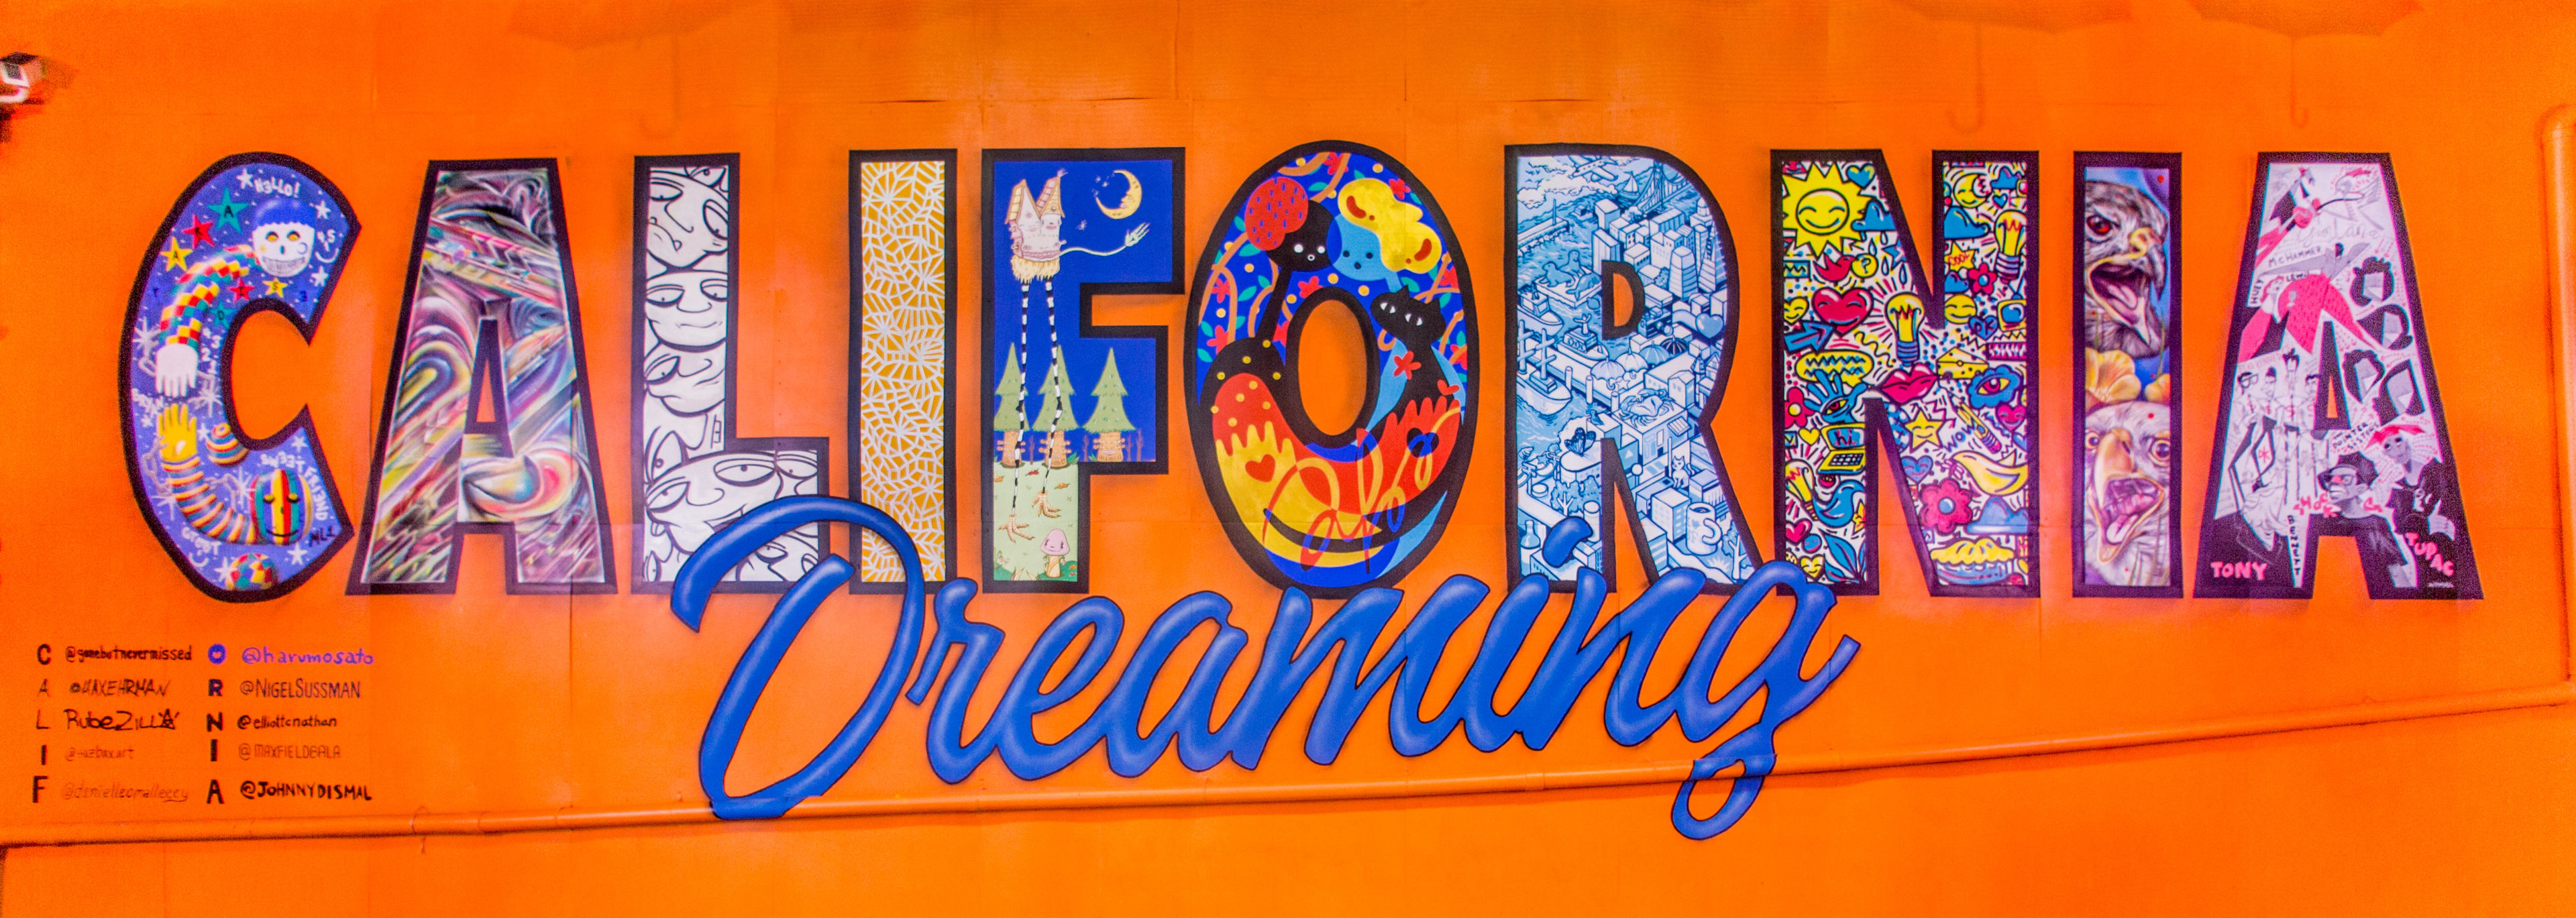 Kolorowy mural z napisem „California Dreaming” przy Umbrella Alley w Oakland w Kalifornii